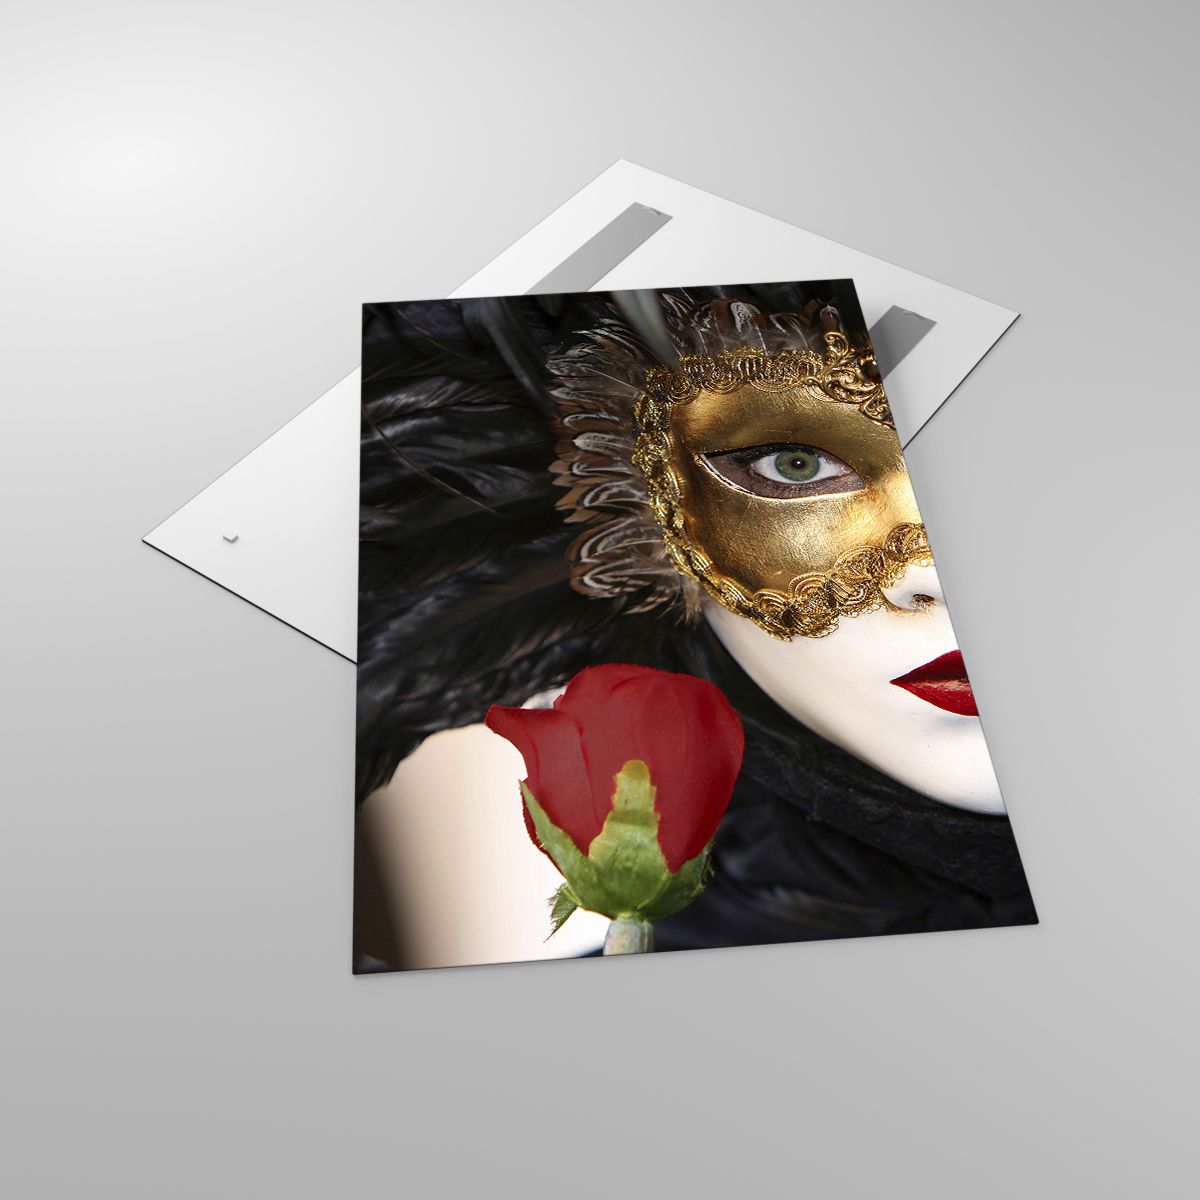 Cuadro Máscara De Carnaval, Cuadro Rosa, Cuadro Labios Rojos, Cuadro Arte, Cuadro Teatro